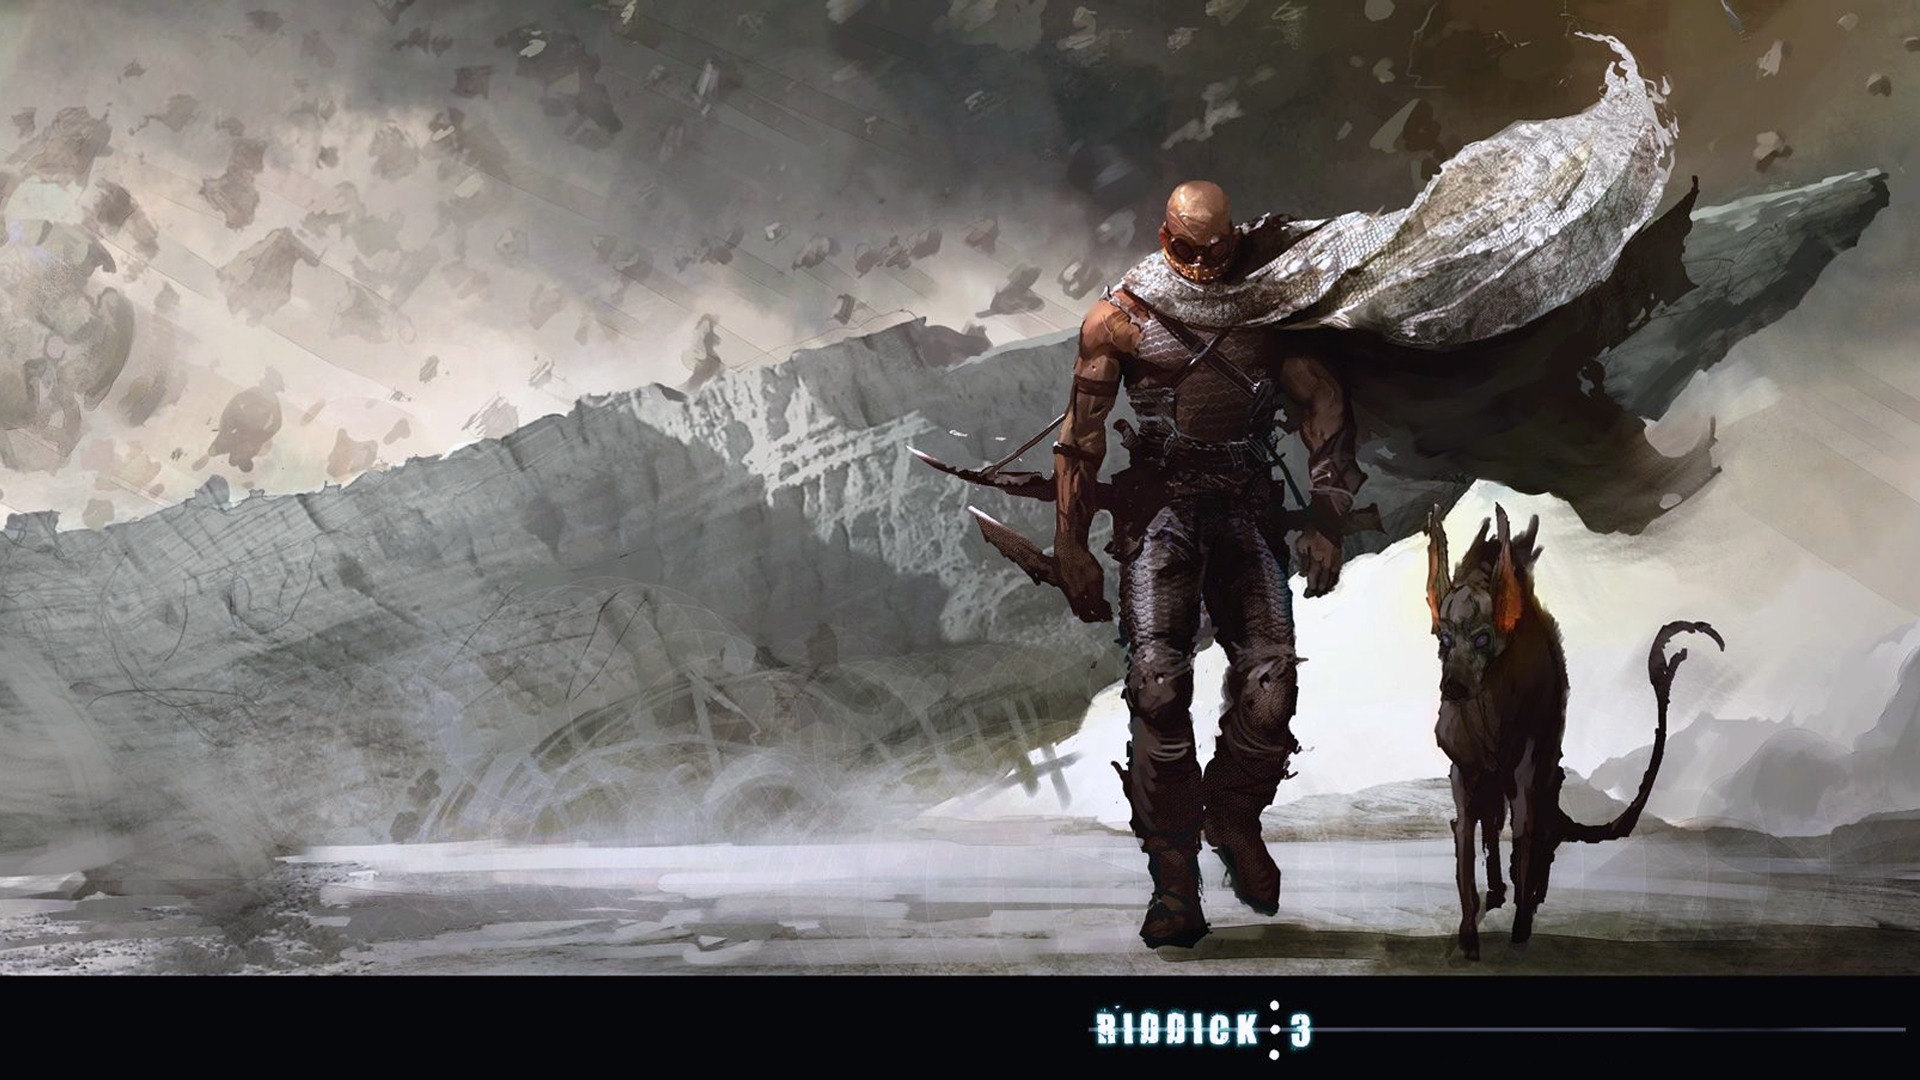 Melhores papéis de parede de Riddick 3 para tela do telefone